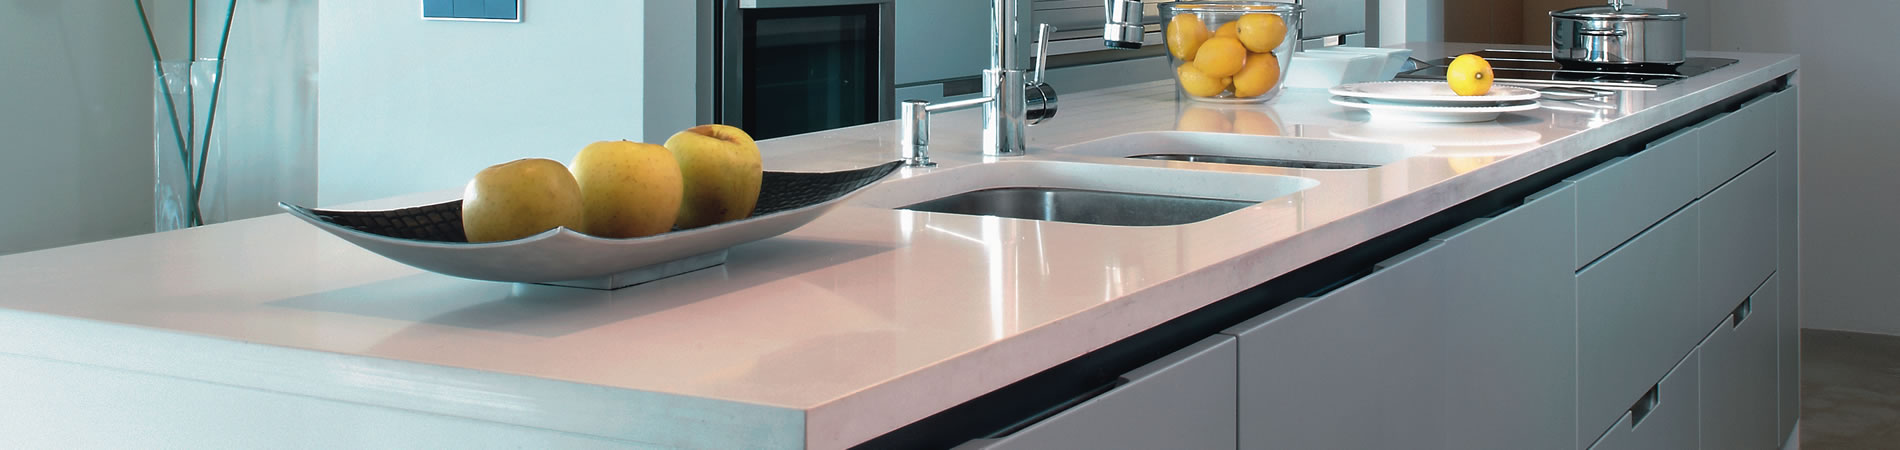 Harmonious Silestone Kitchen Countertops - Modern Kitchen Countertops